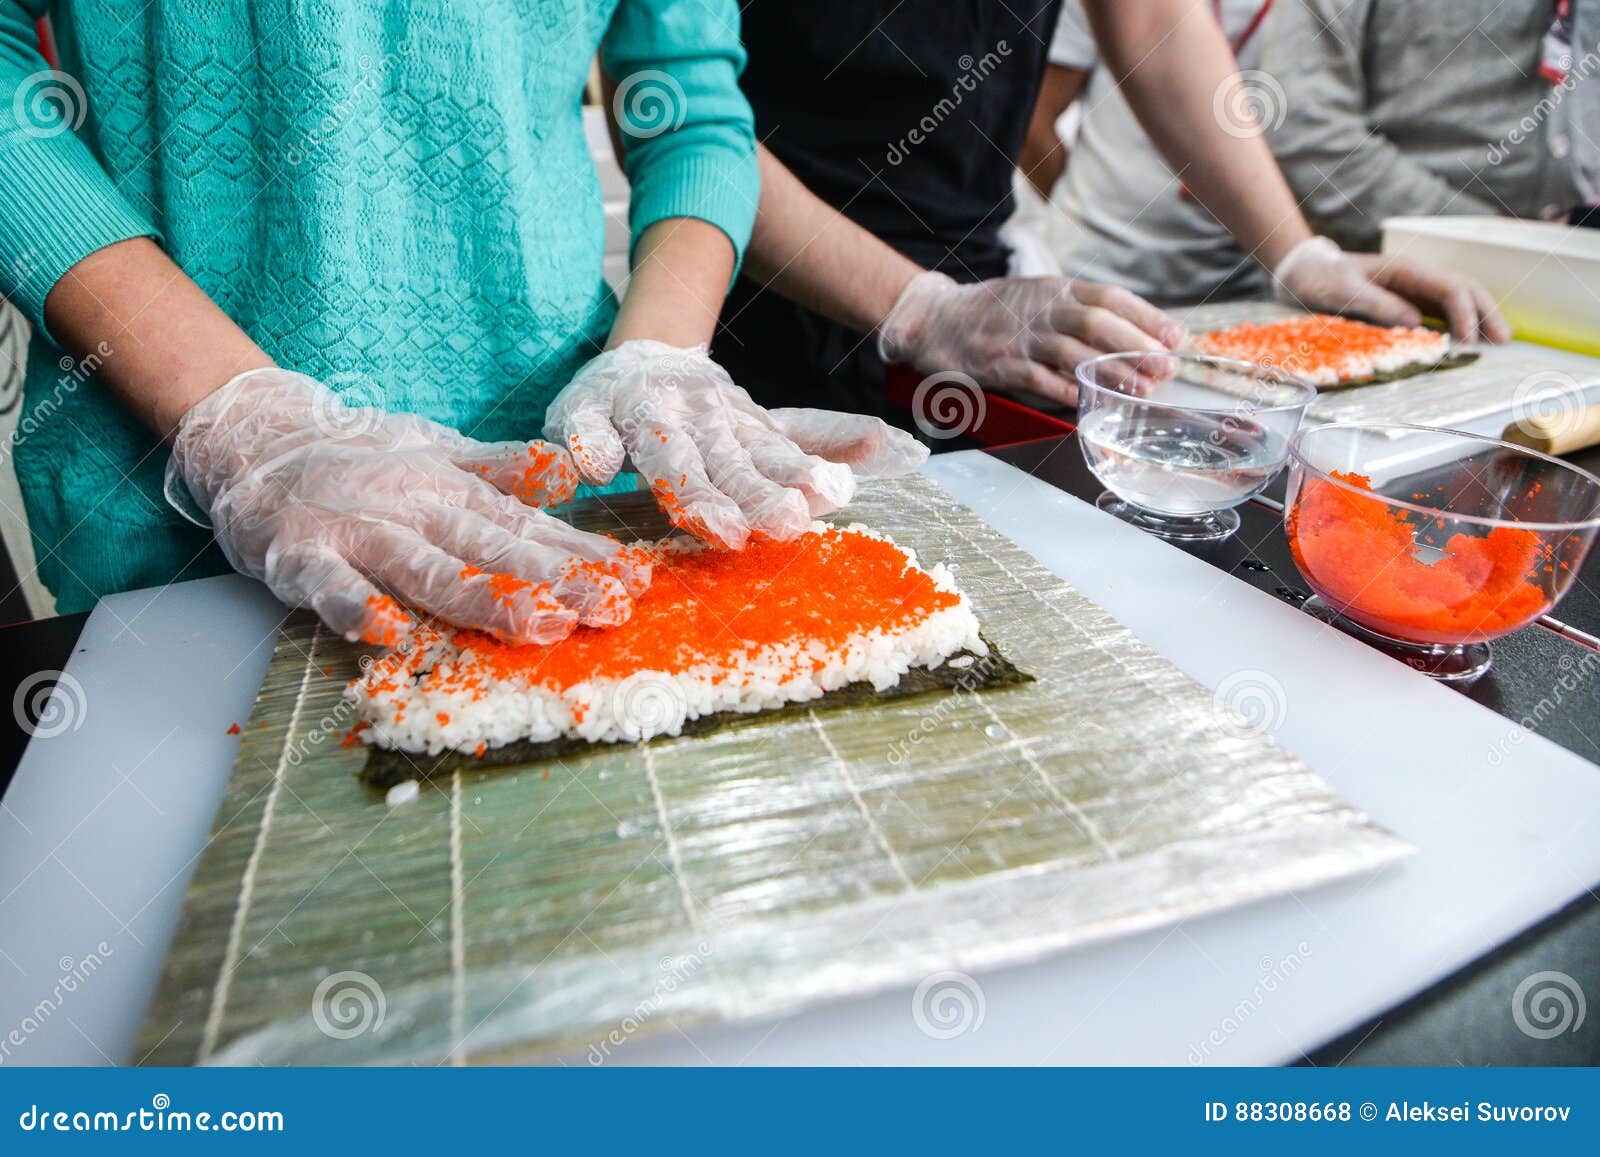 Proceso de hacer el sushi. El proceso de hacer los rollos de sushi California